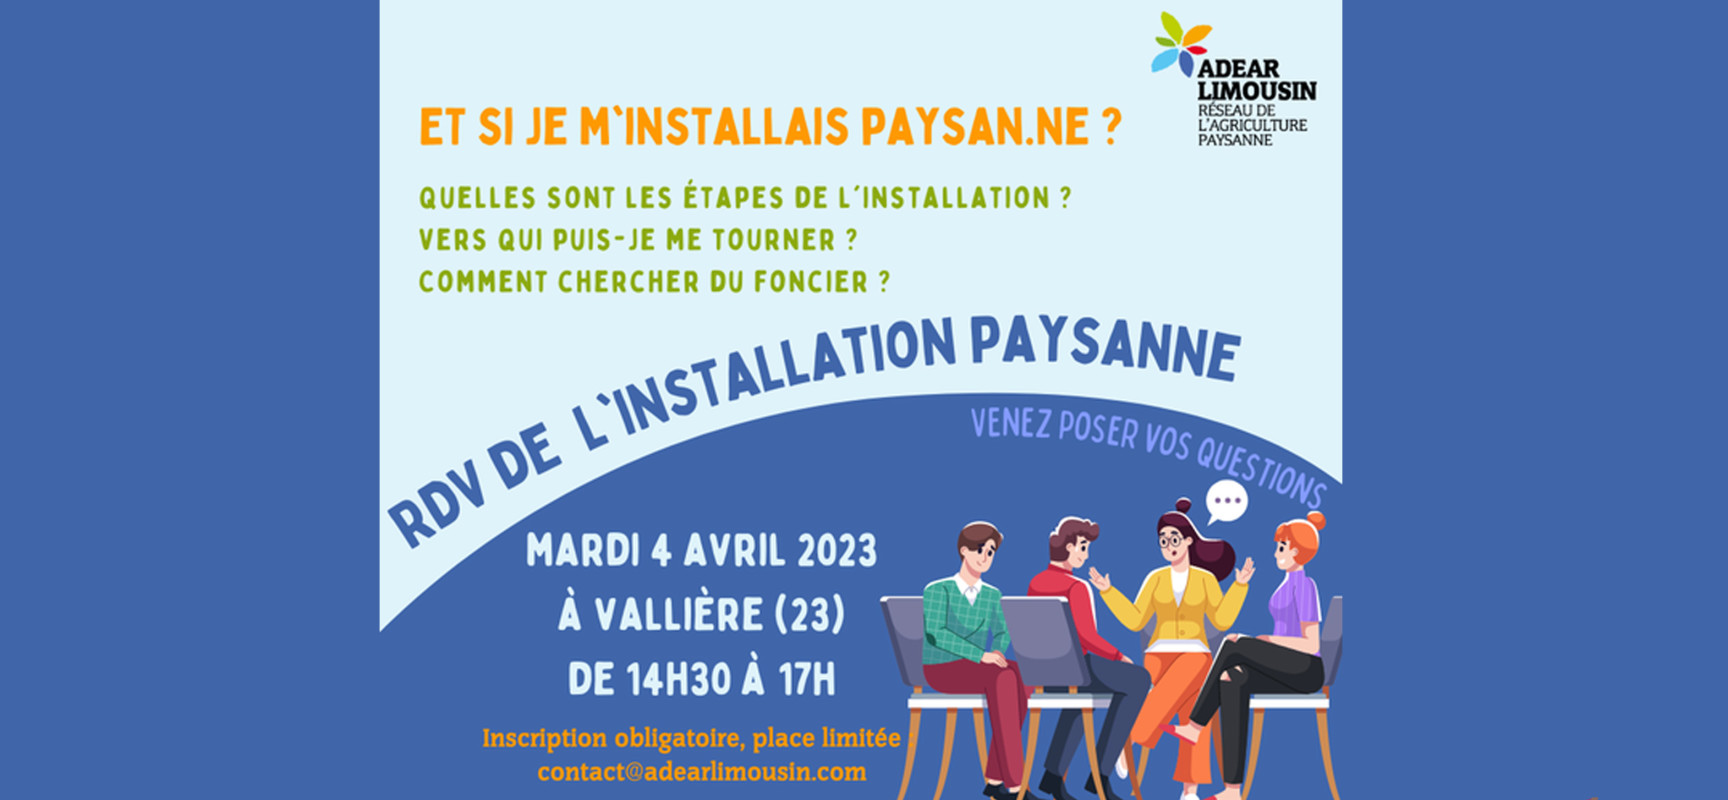 [ADEAR] Prochain rendez-vous de l’installation agricole, mardi 4 avril 2023 de 14h30 à 17h à #Vallière